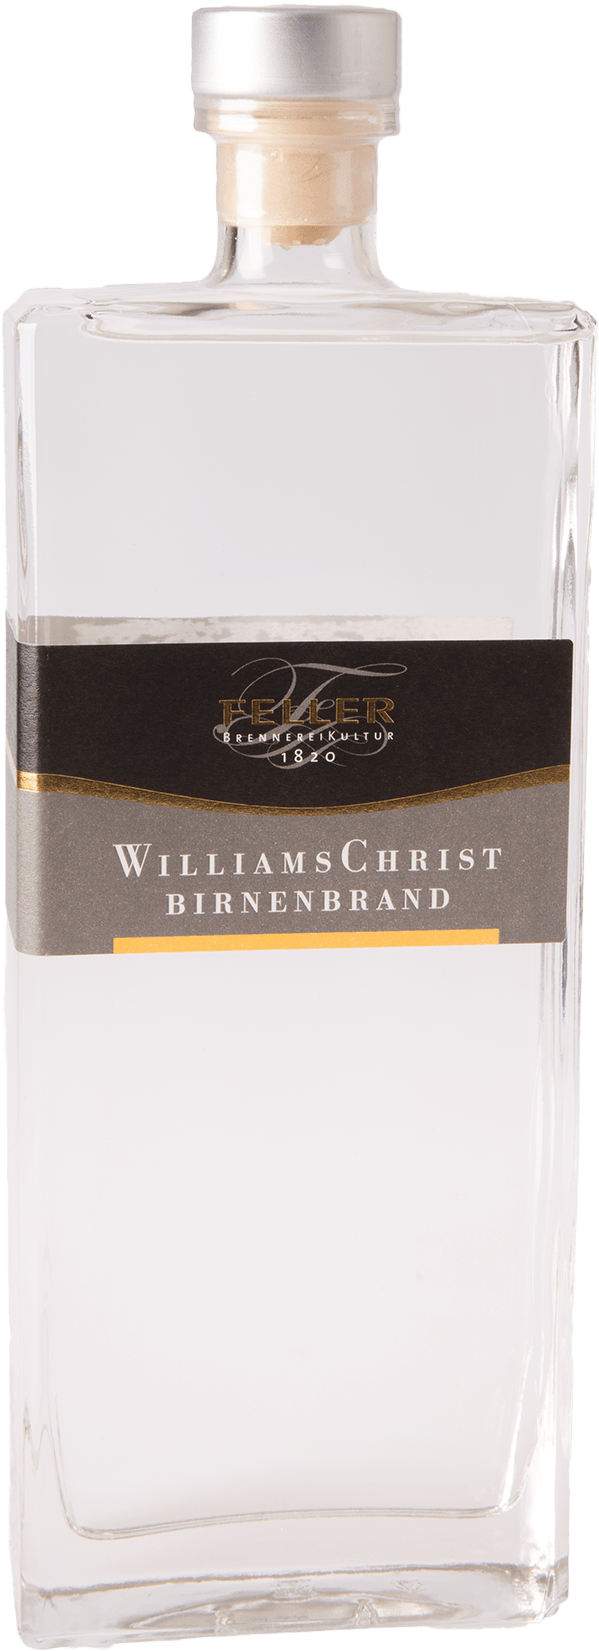 Feller Williams-Christ Birnenbrand 40% 0,5L